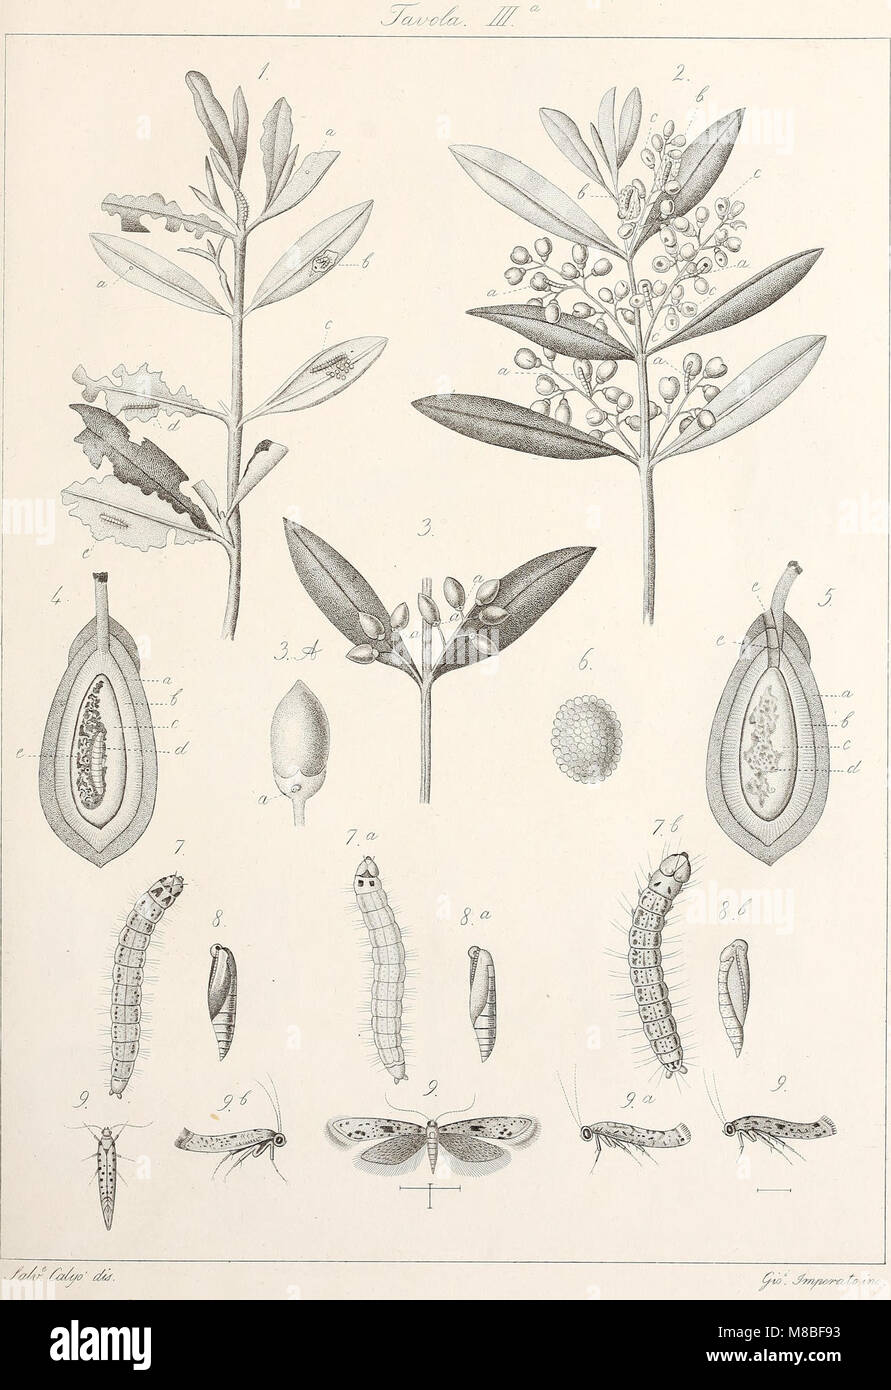 Degl' che insetti attaccano l'albero ed il frutto dell'olivo (1857) (20846777555) Foto de stock